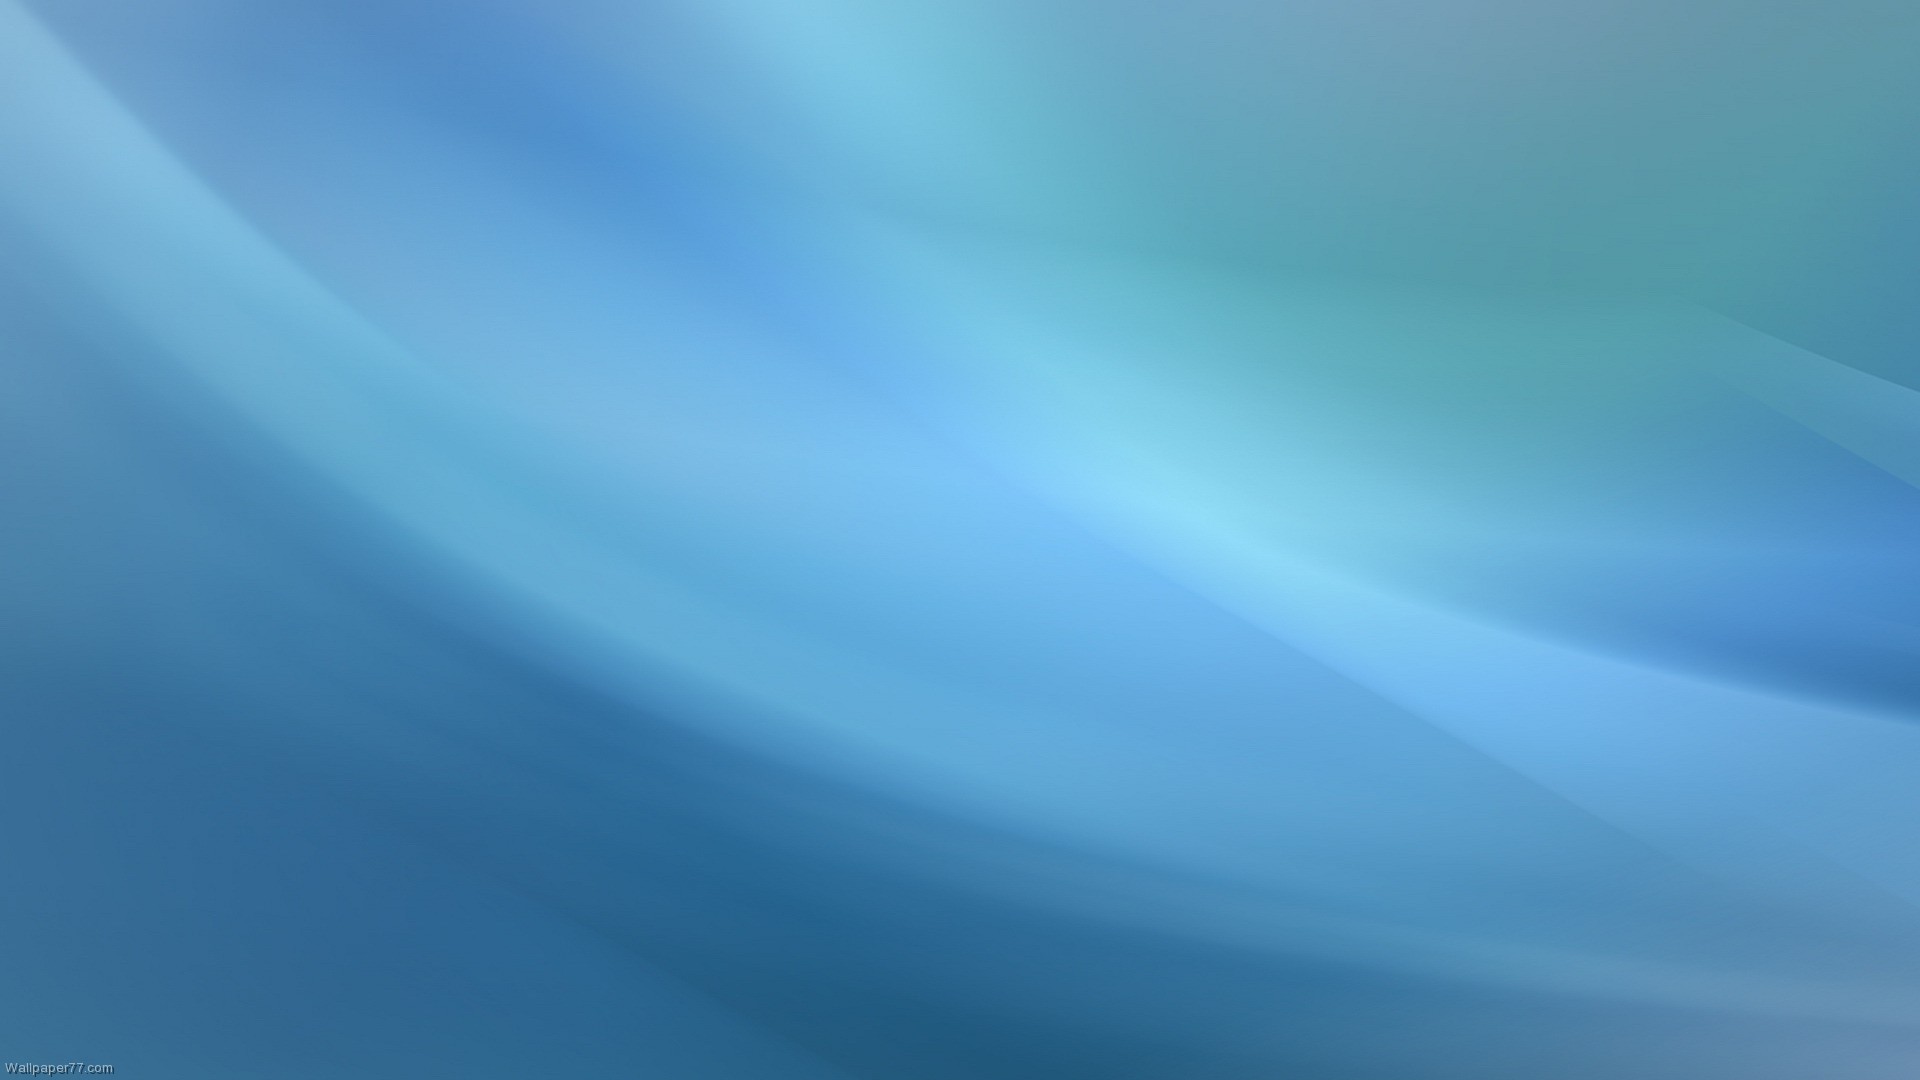 Abstract Teal Desktop Wallpaper Aurora Blue Apple